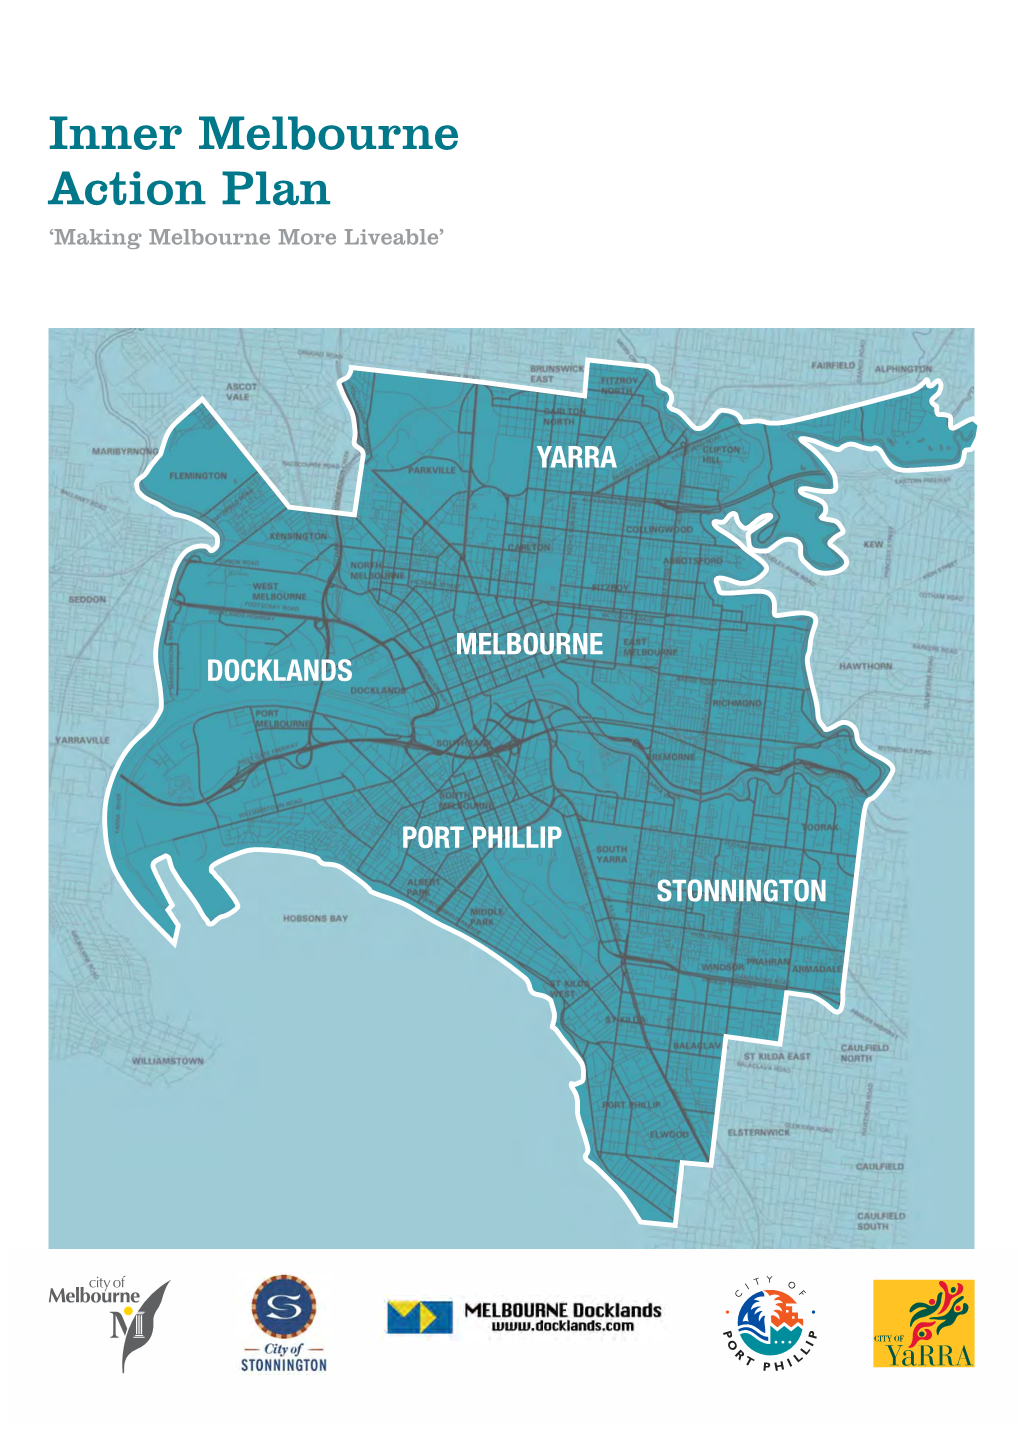 Inner Melbourne Action Plan ‘Making Melbourne More Liveable’